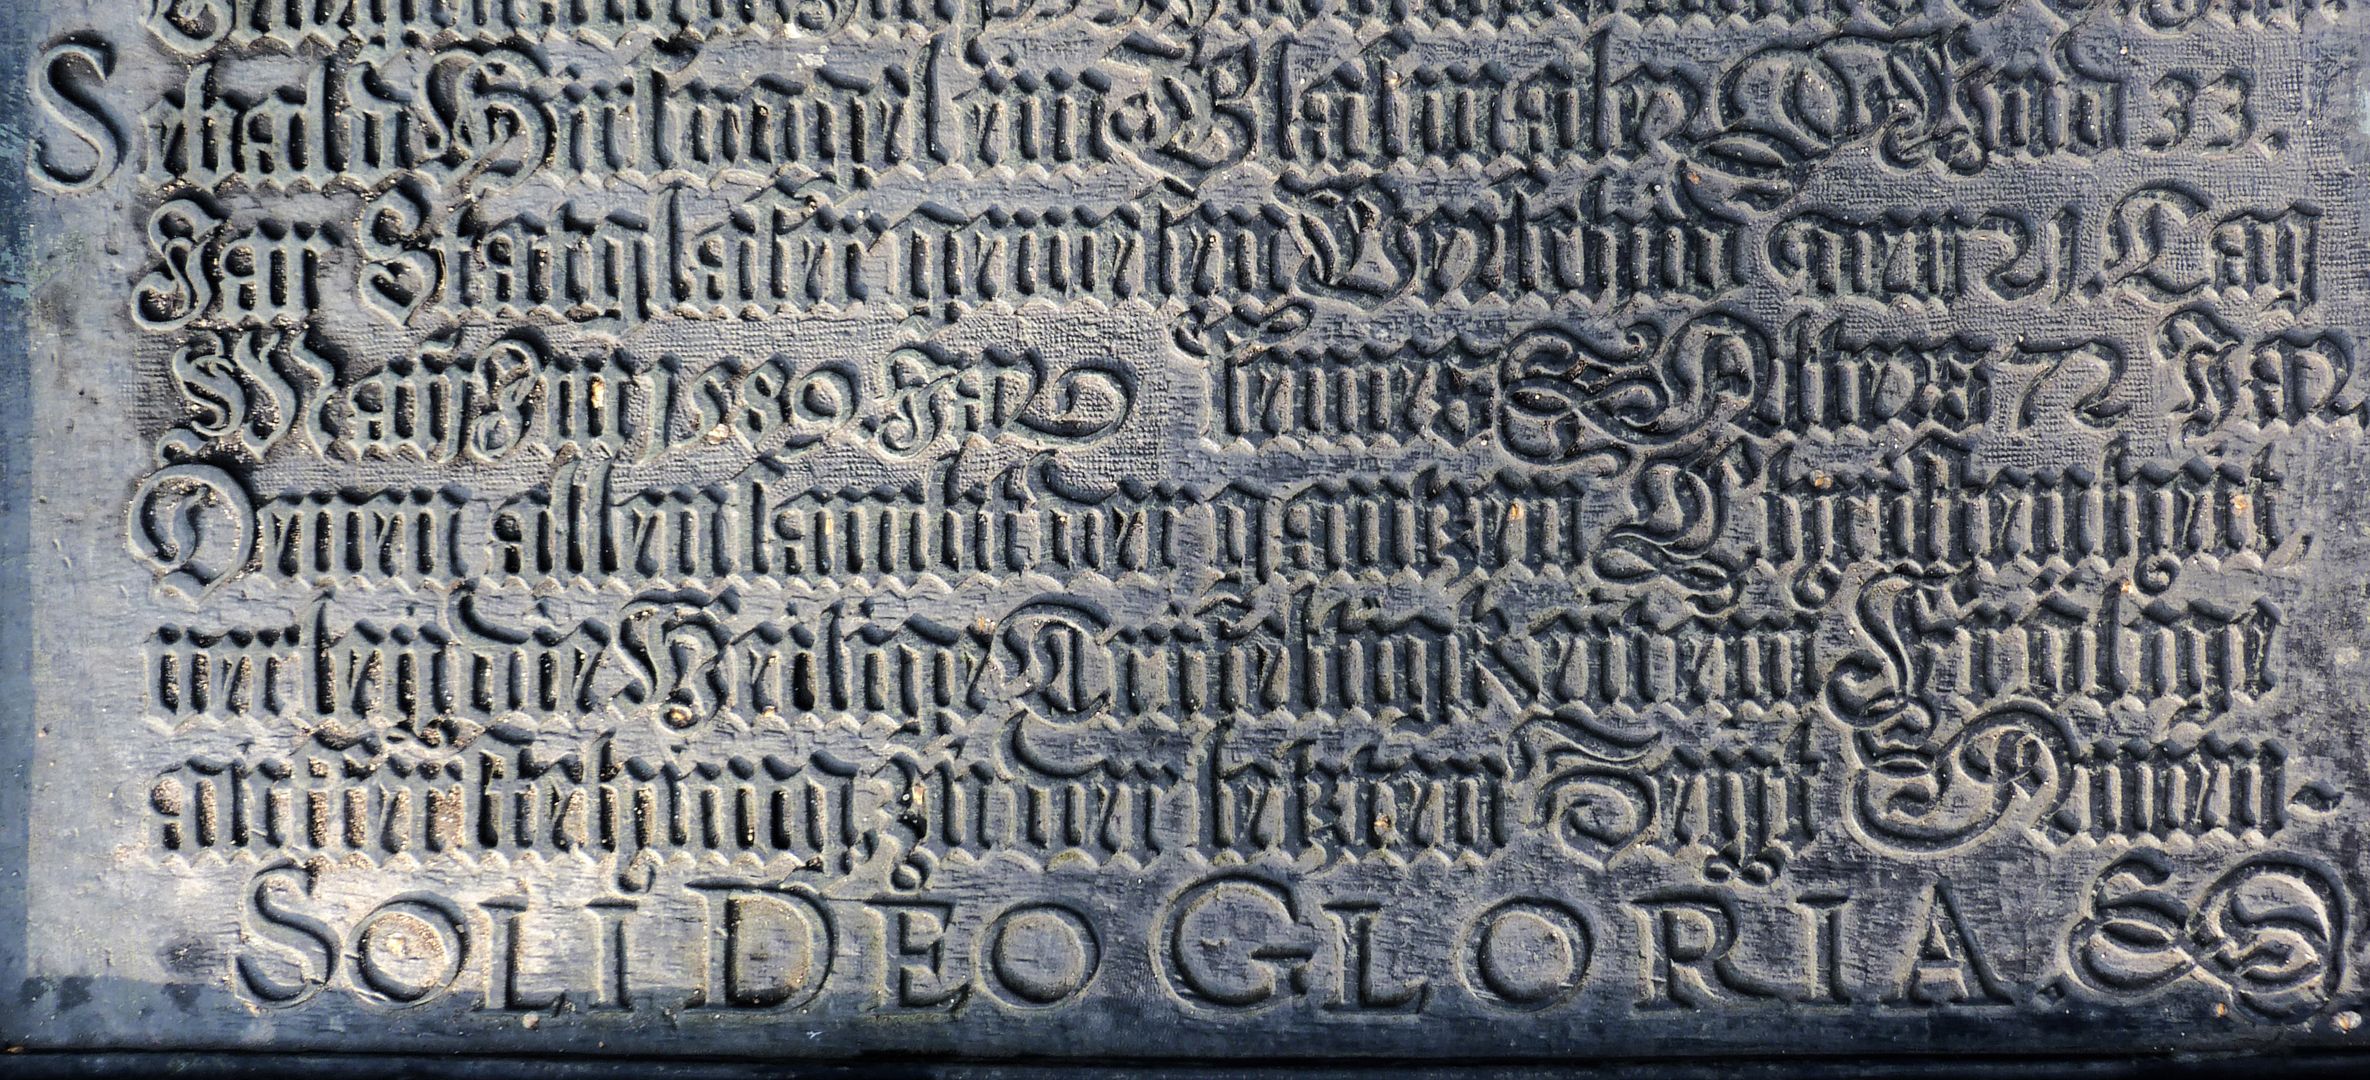 Hirsvogel Epitaph lower part of the panel with entry Sebald Hirsvogel